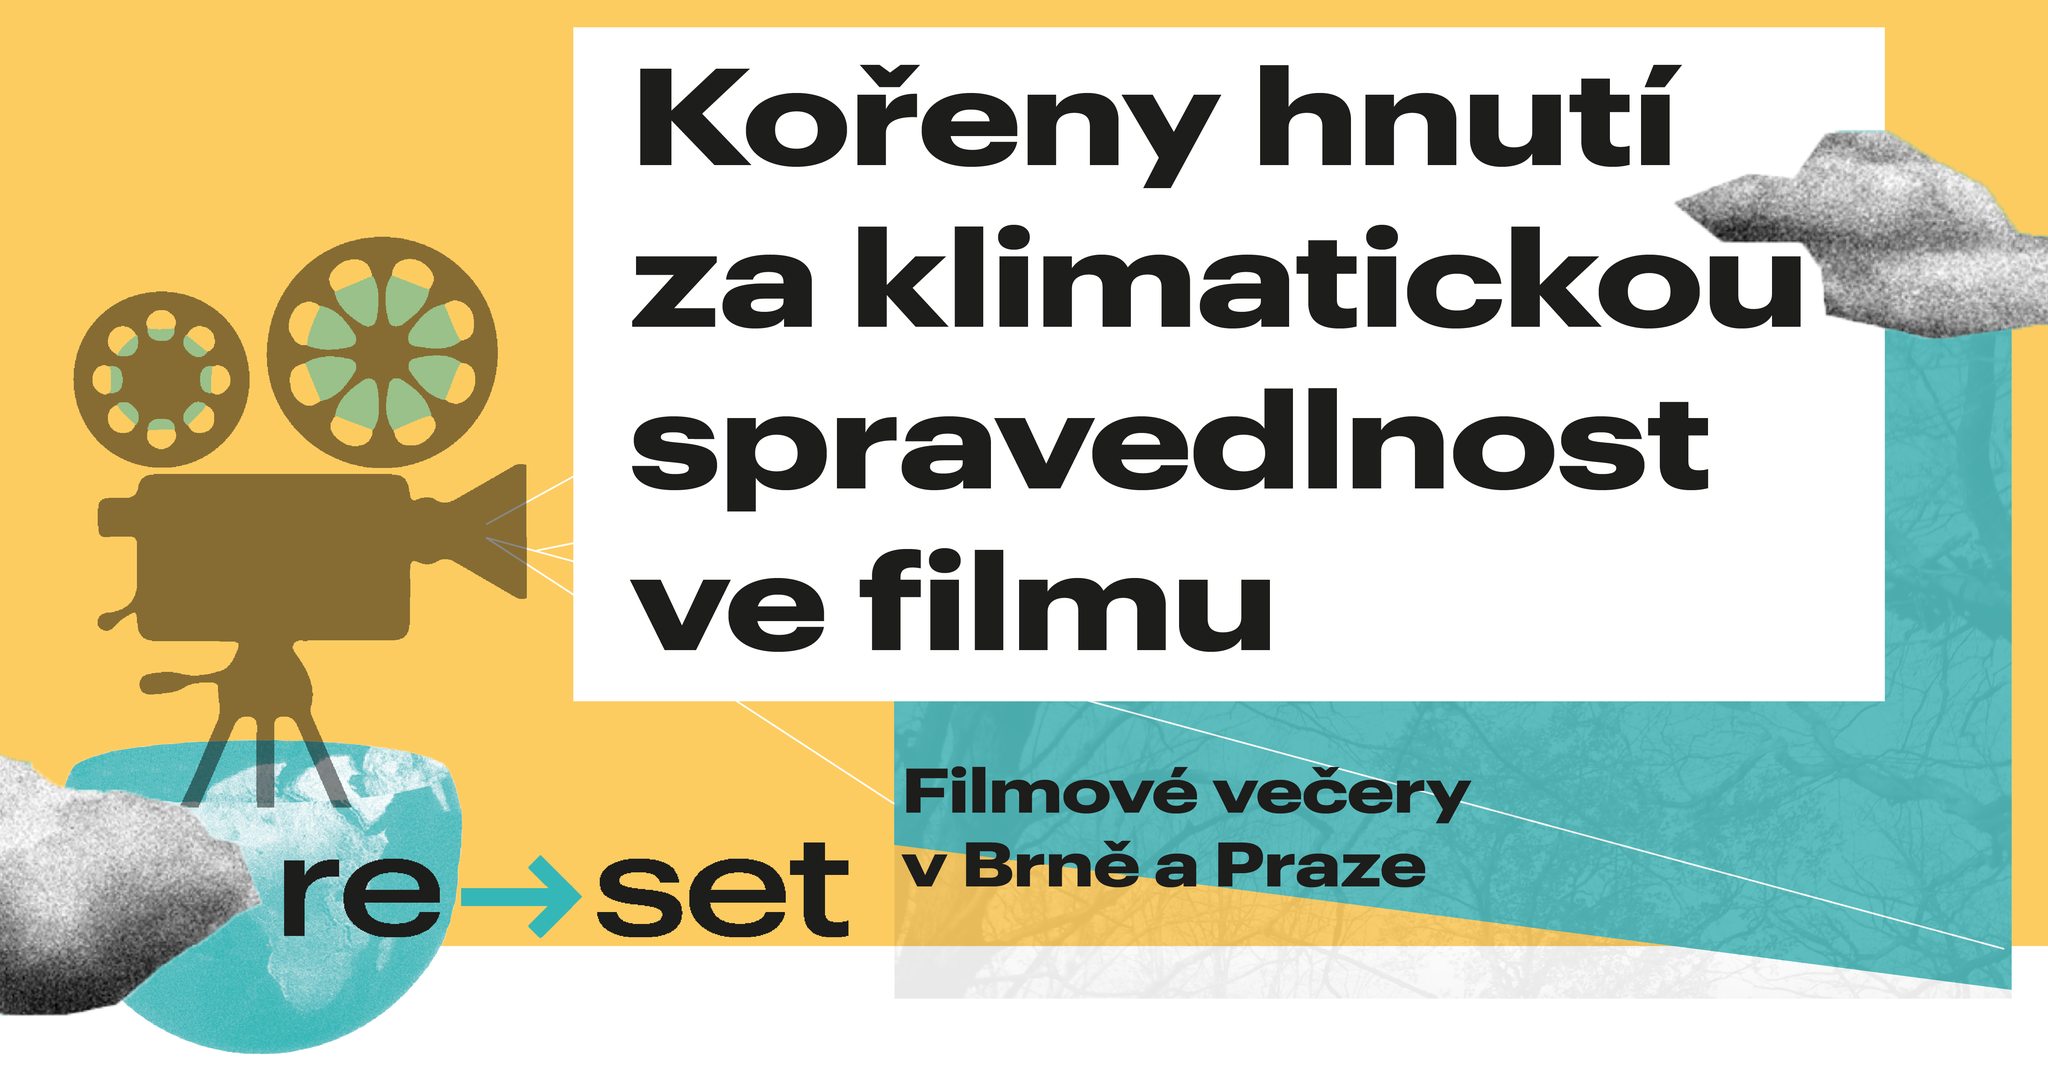 Zveme vás na filmové večery v Praze a Brně na téma Kořeny hnutí za klimatickou spravedlnost